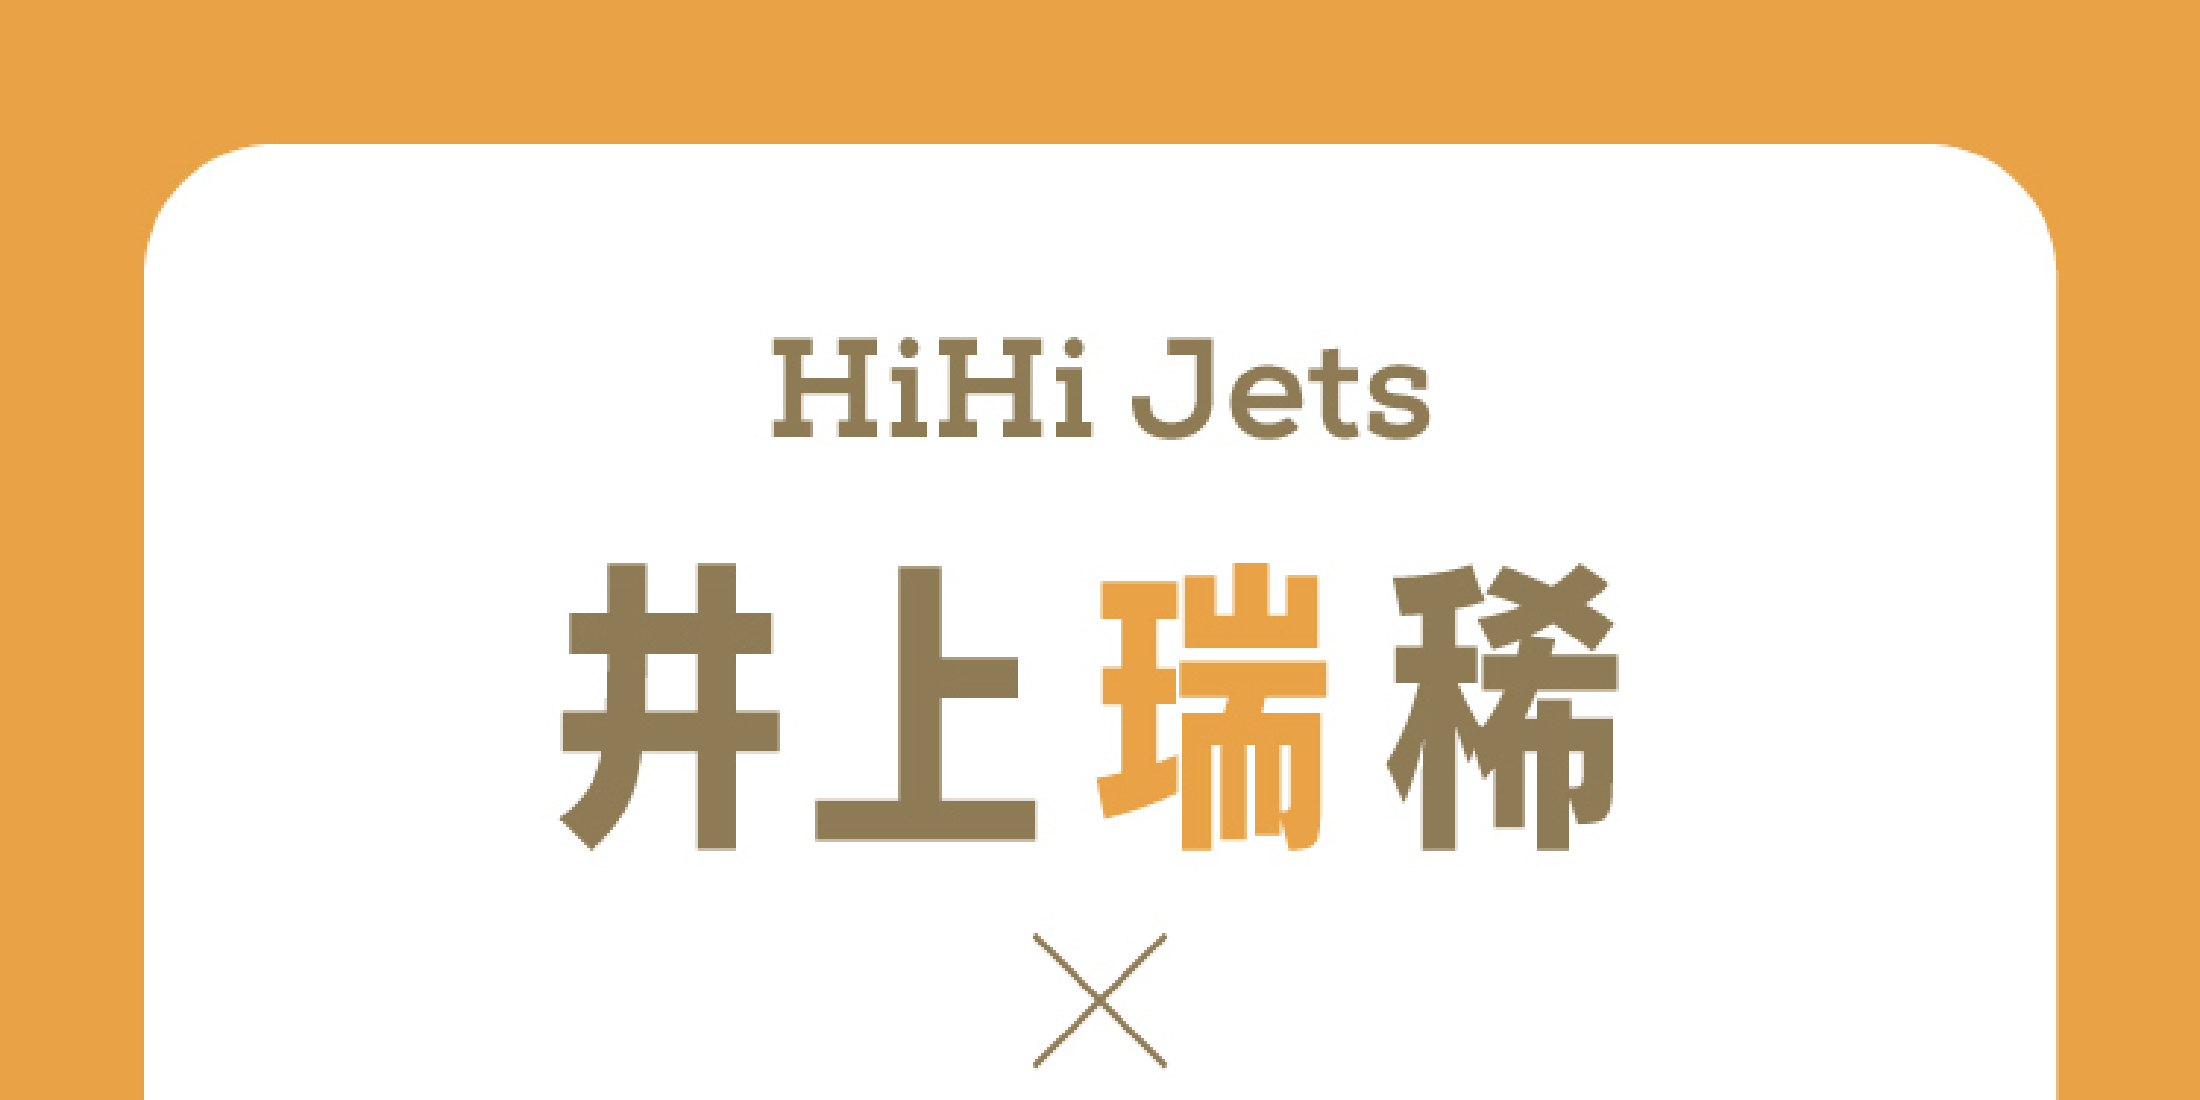 【HiHi Jets #さくみず】井上瑞稀×作間龍斗インタビュー。恥ずかしがり屋の井上くんと、かまってほしい作間くん。